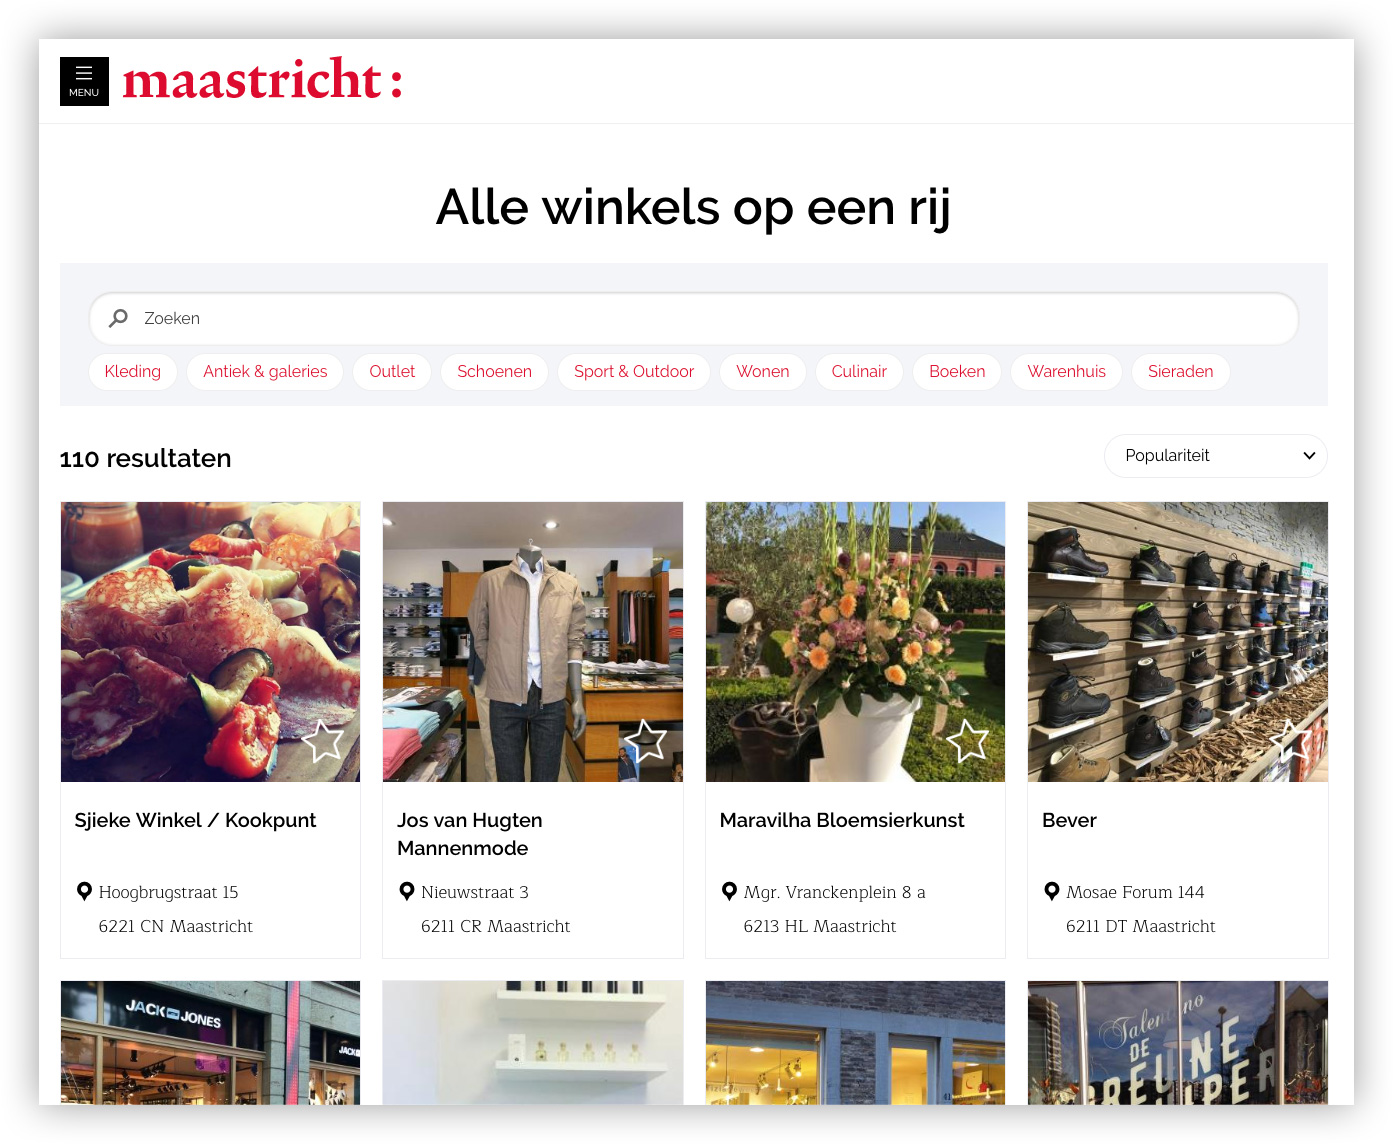 Webpagina met overzicht van winkels in Maastricht met filteropties